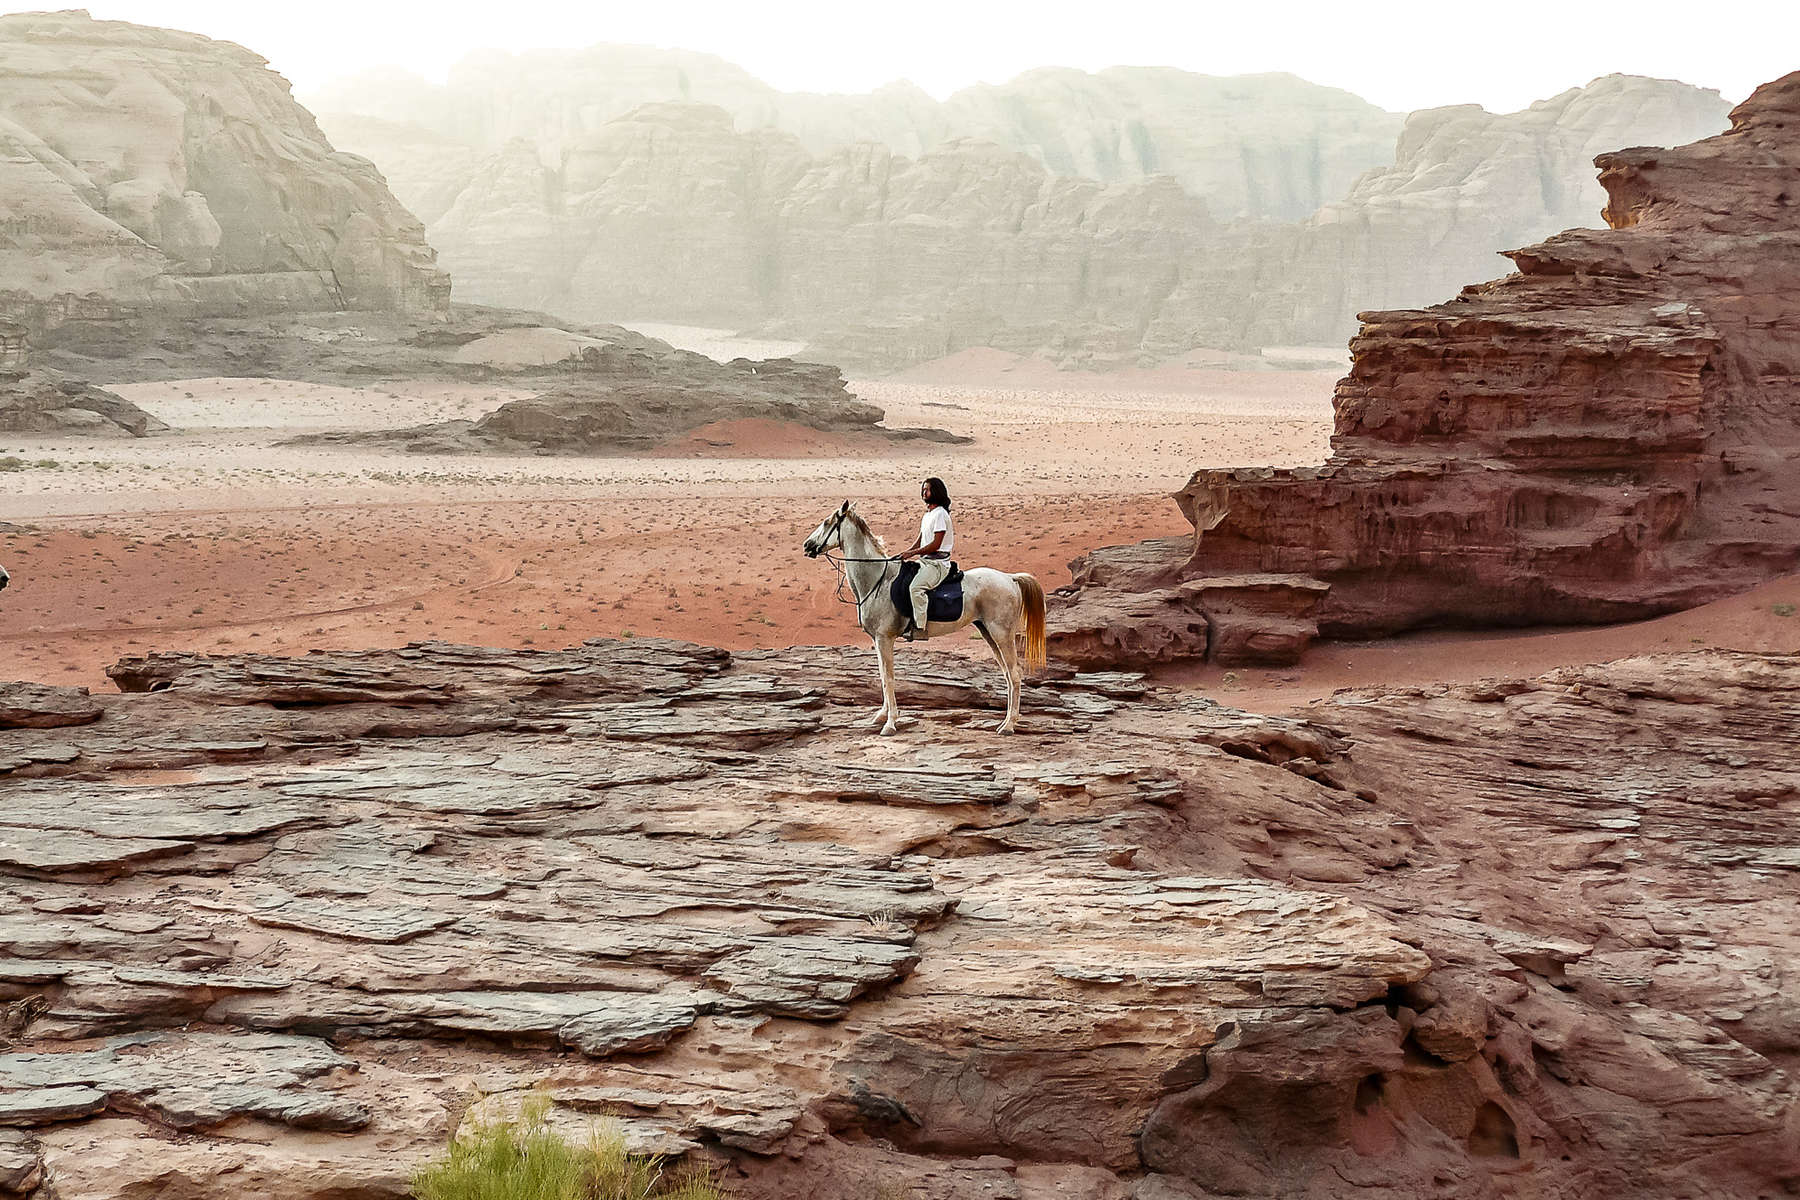 Horse and rider in the Wadi Rum desert, Jordan